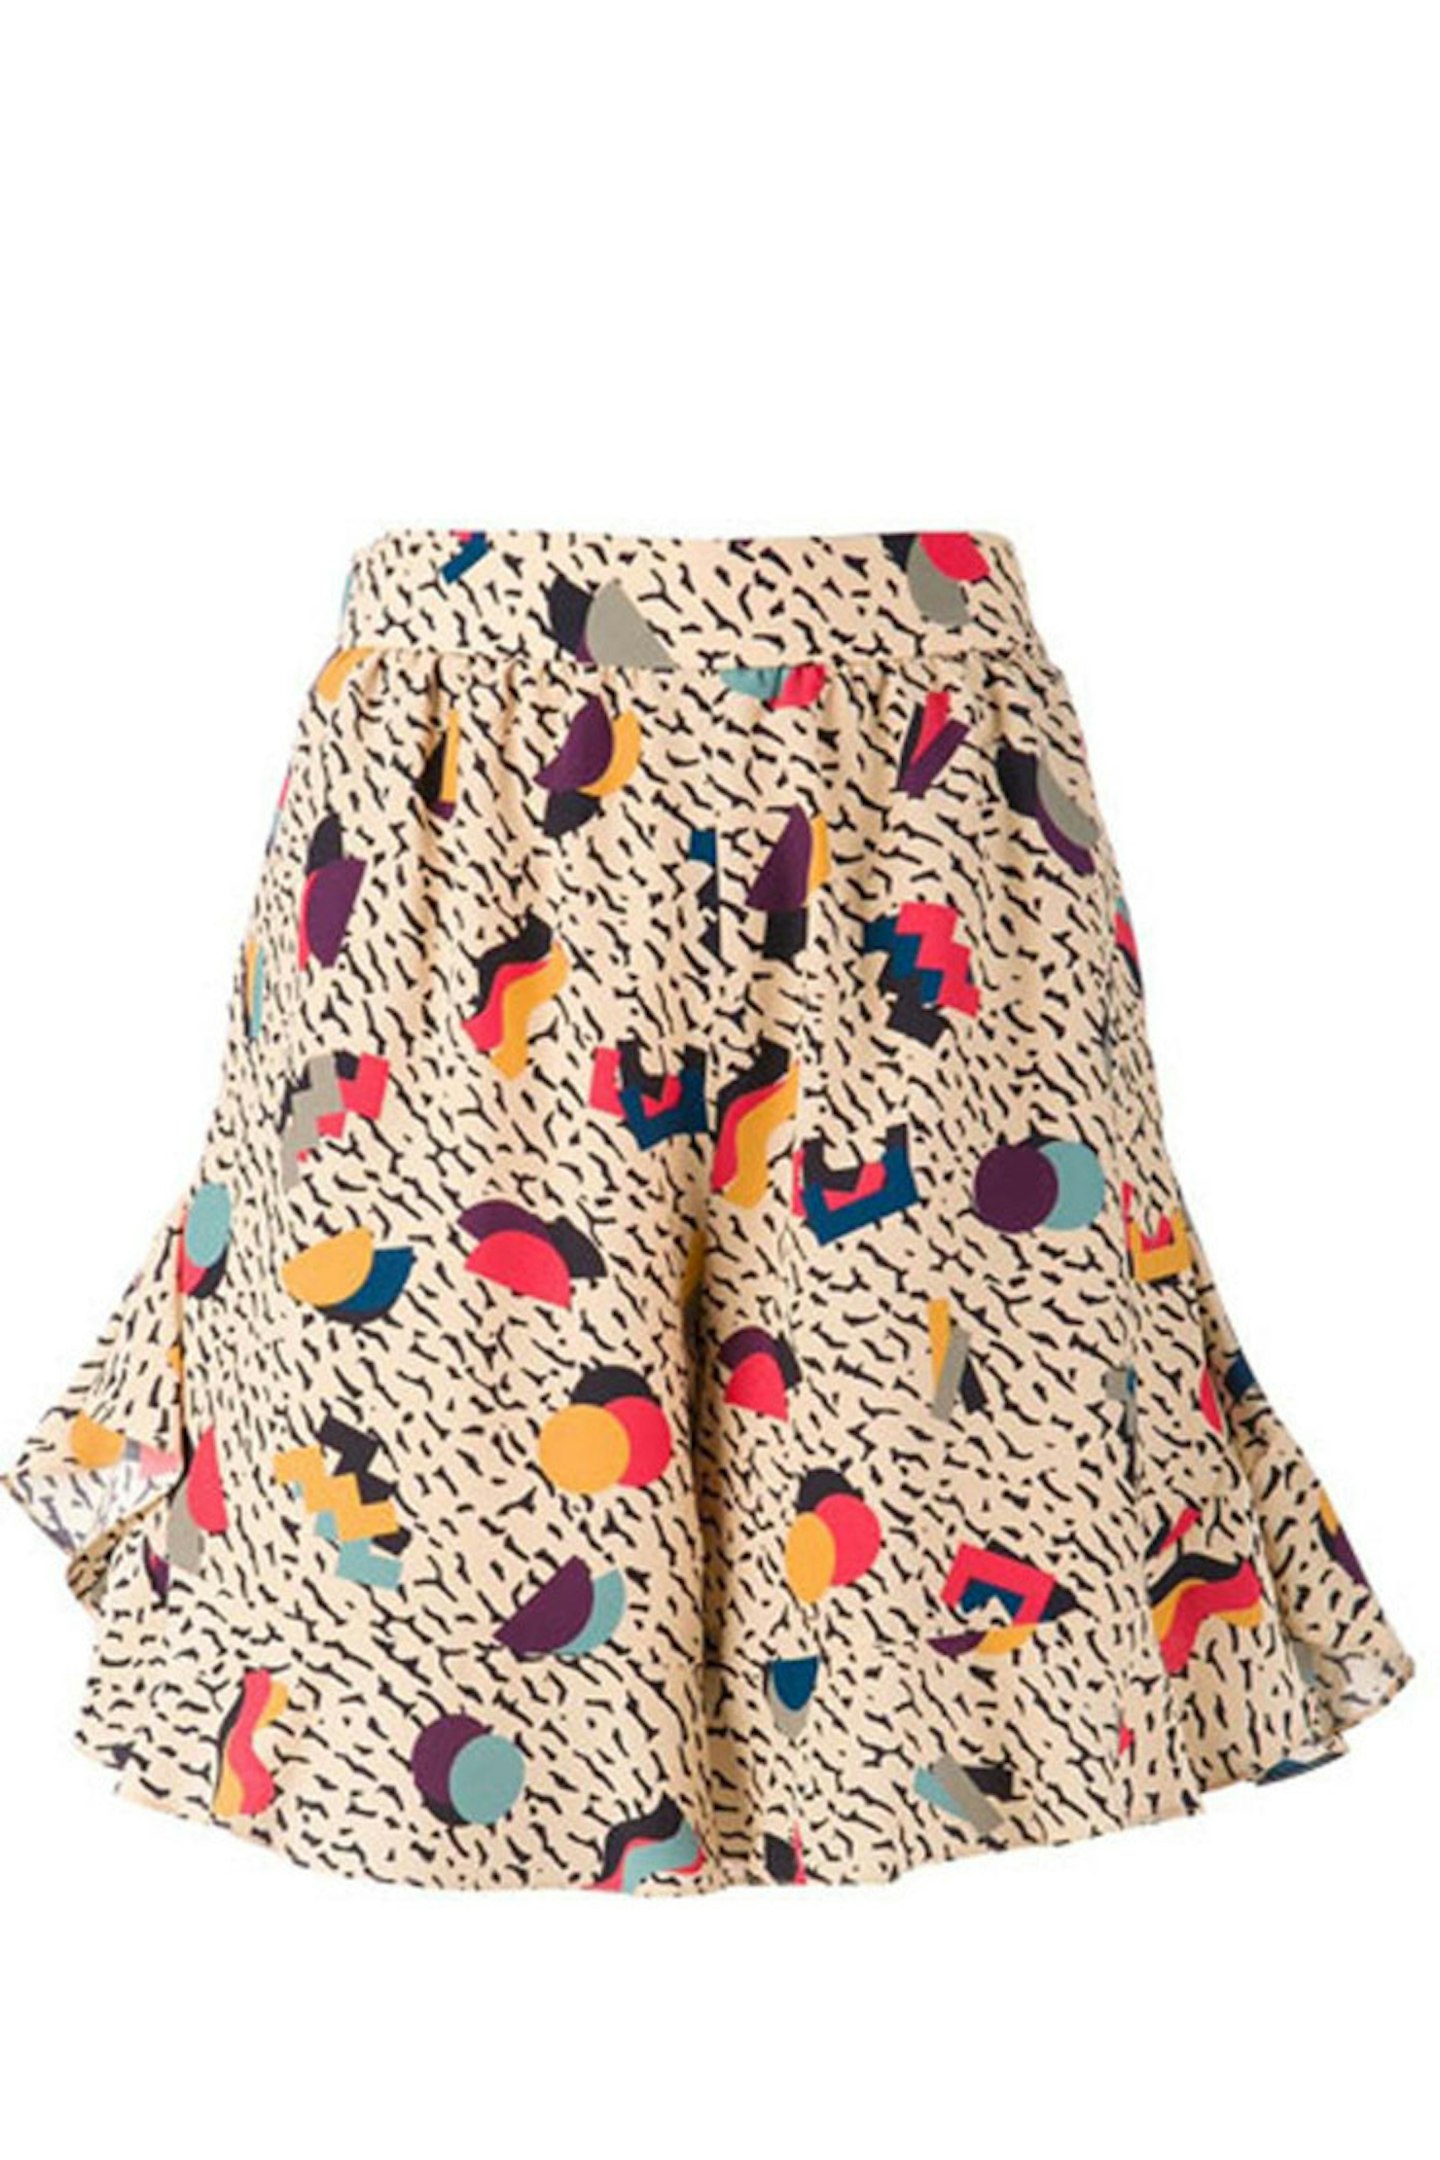 Skirt, £592, Chloe at Farfetch